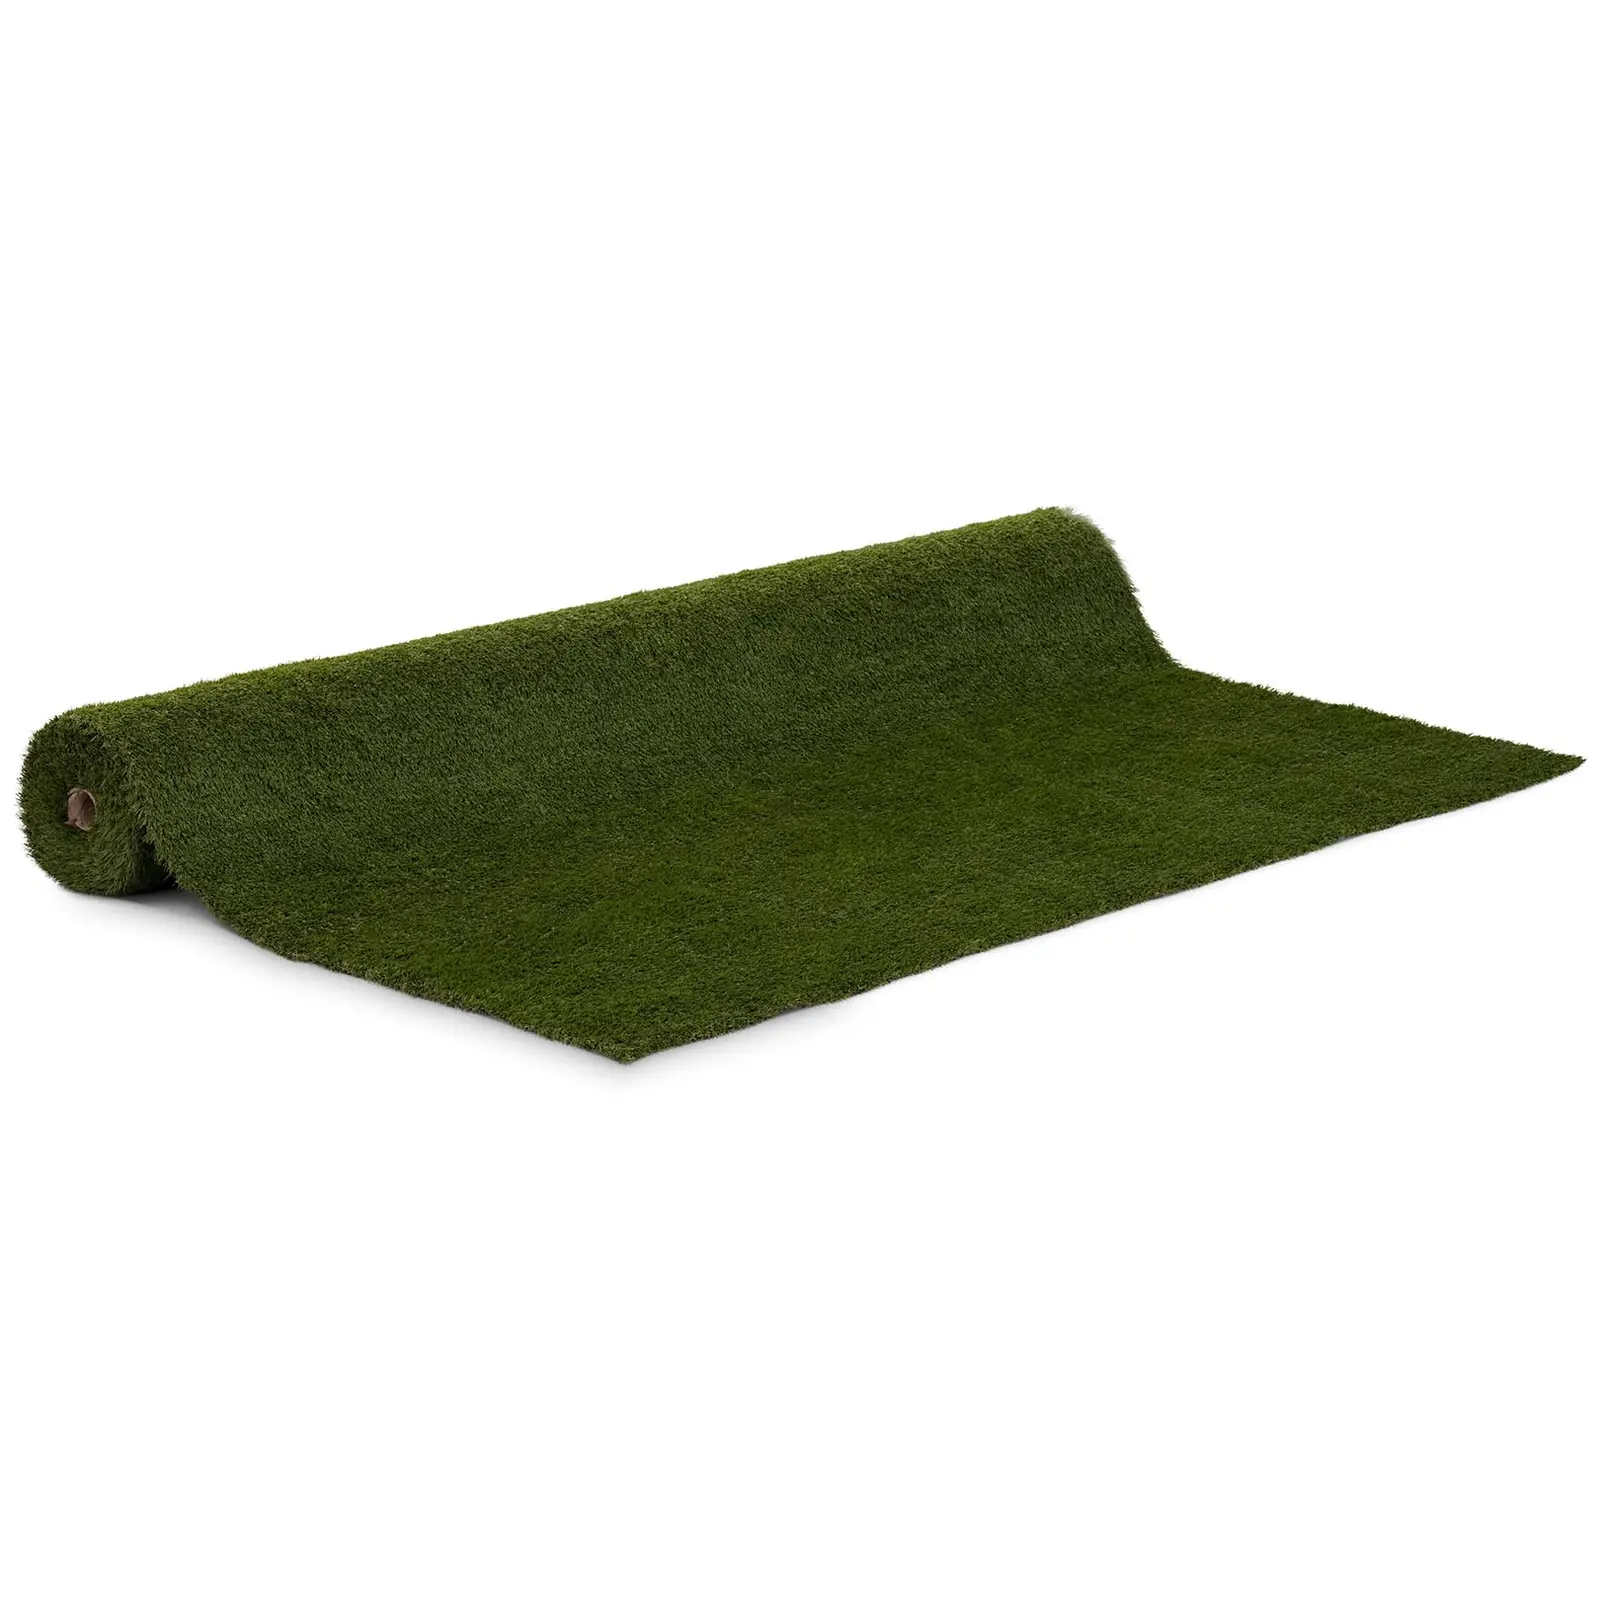 Umělý trávník - 507 x 200 cm - výška: 30 mm - hustota stehů: 20/10 cm - odolný proti UV záření